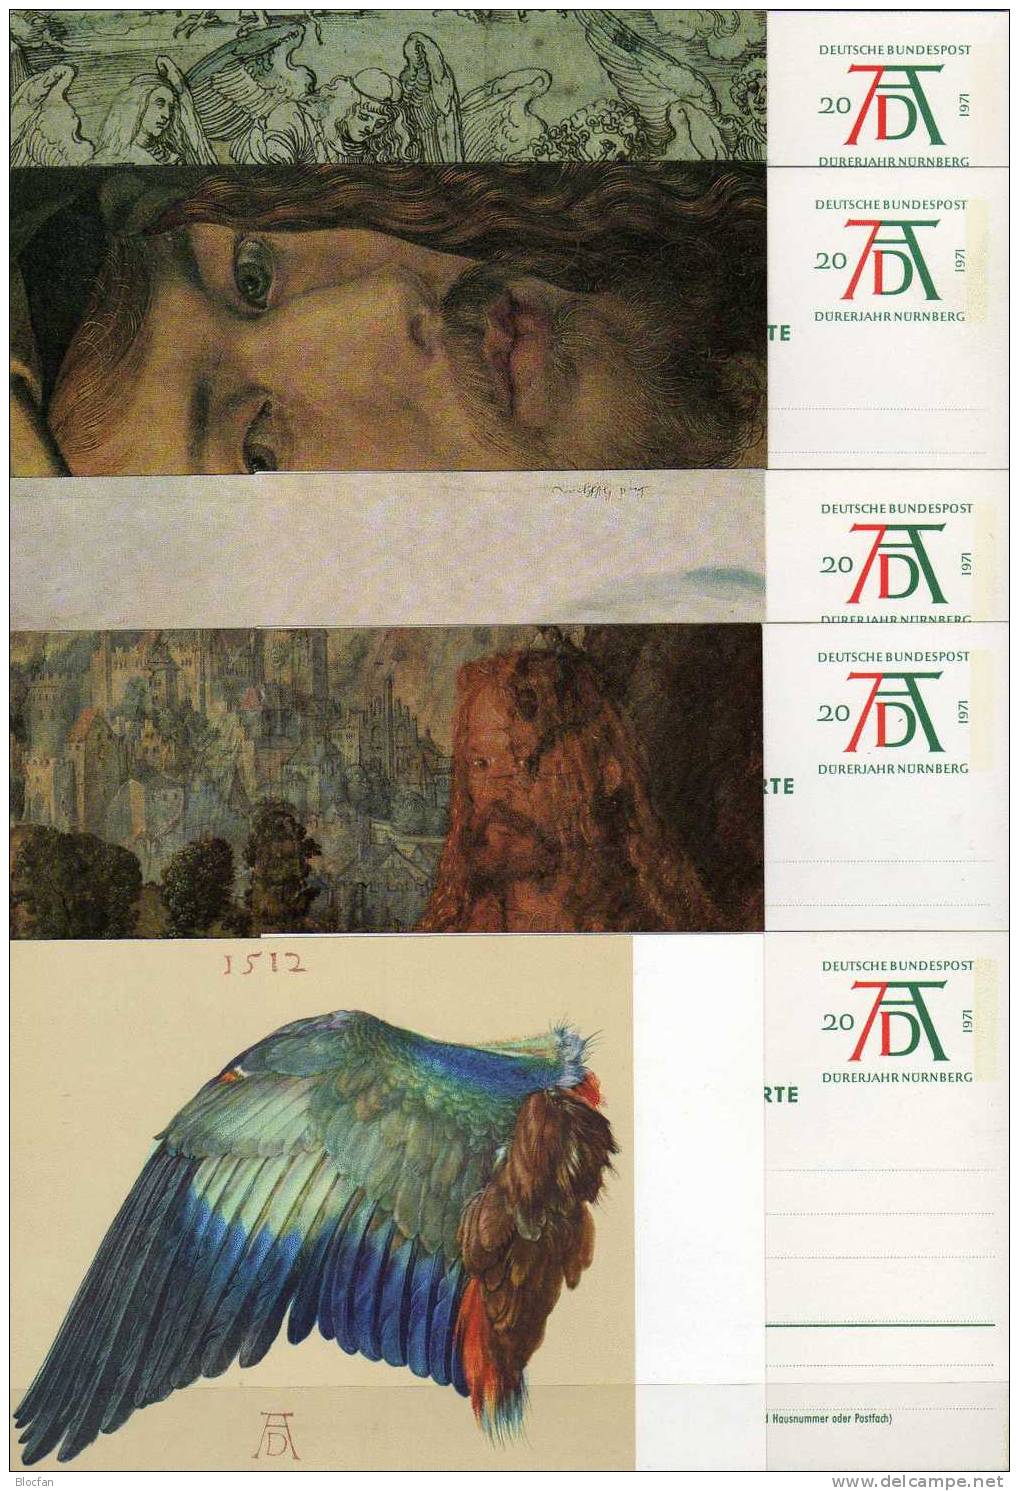 Postkarten Zum Dürer Jahr 1971 Bund PSo 3/01-05 Satz ** 5€ - Religious